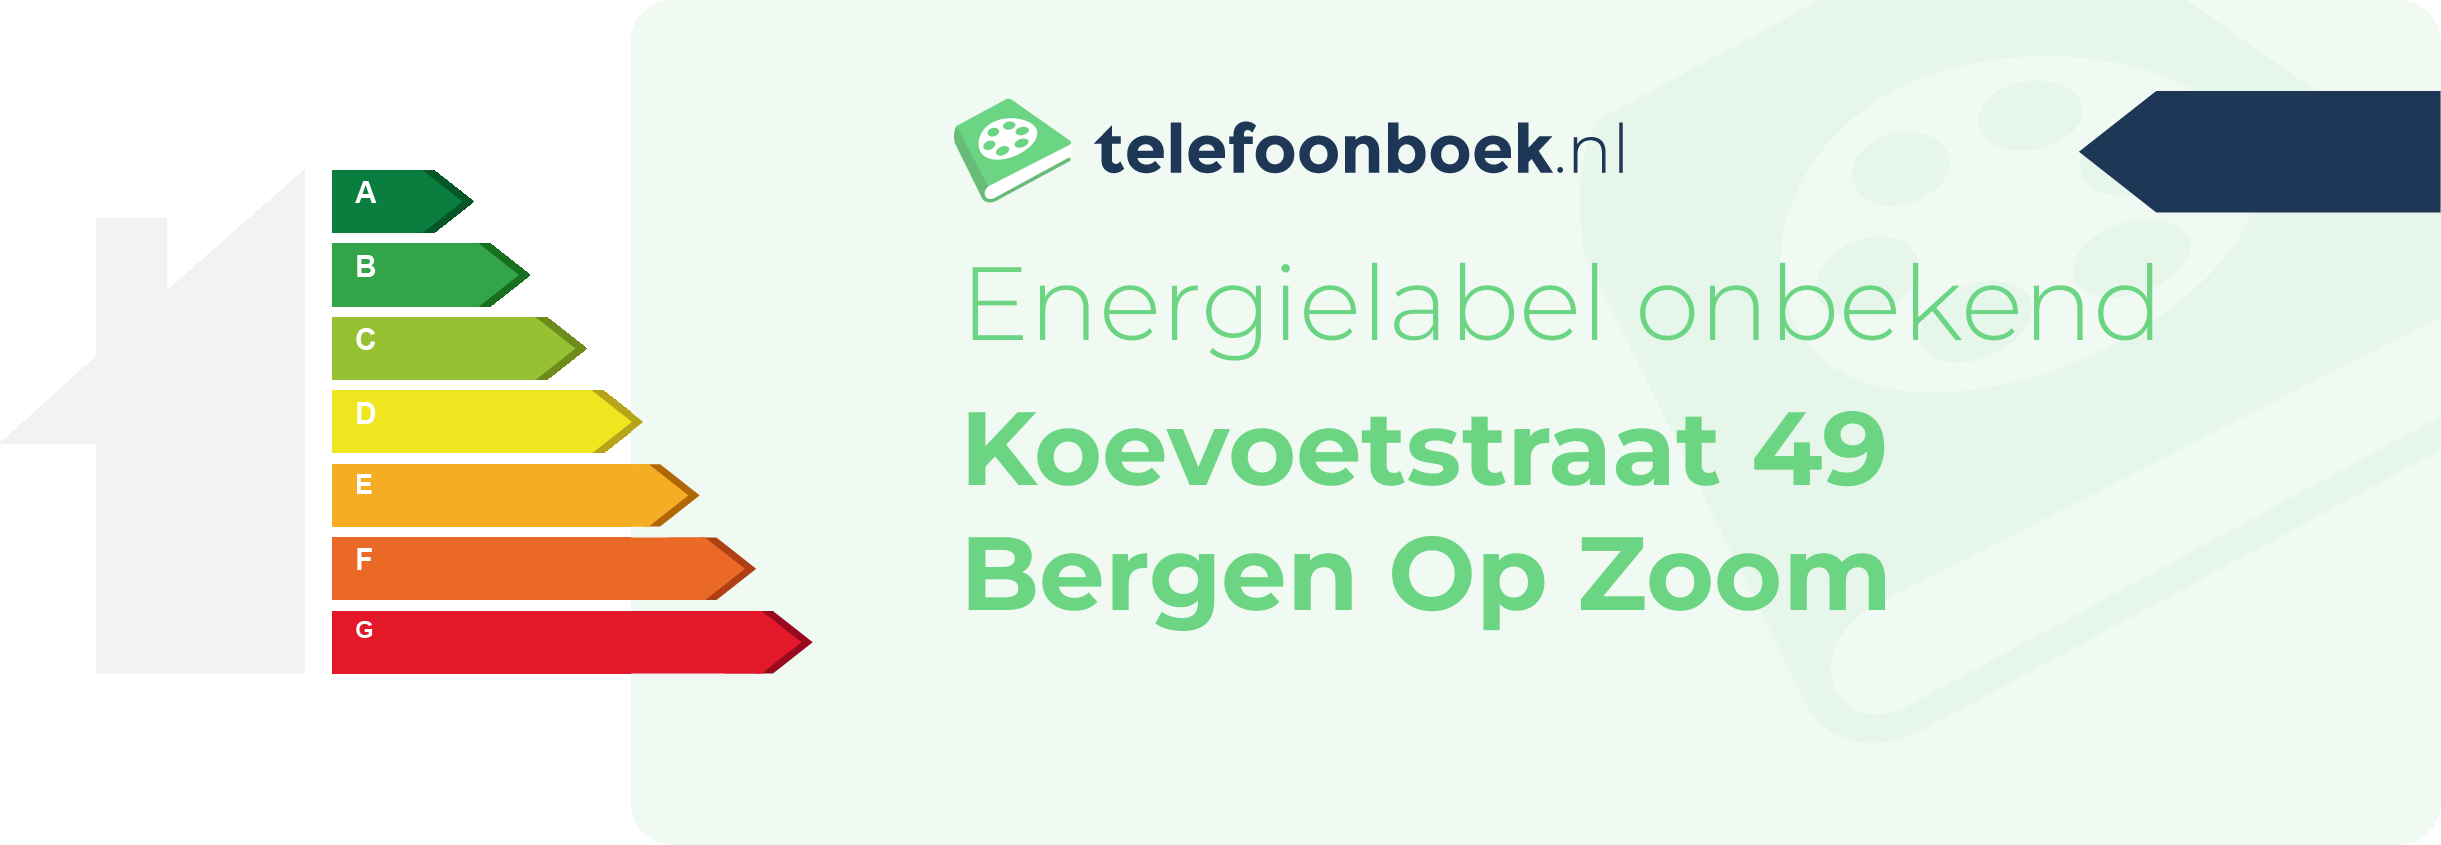 Energielabel Koevoetstraat 49 Bergen Op Zoom